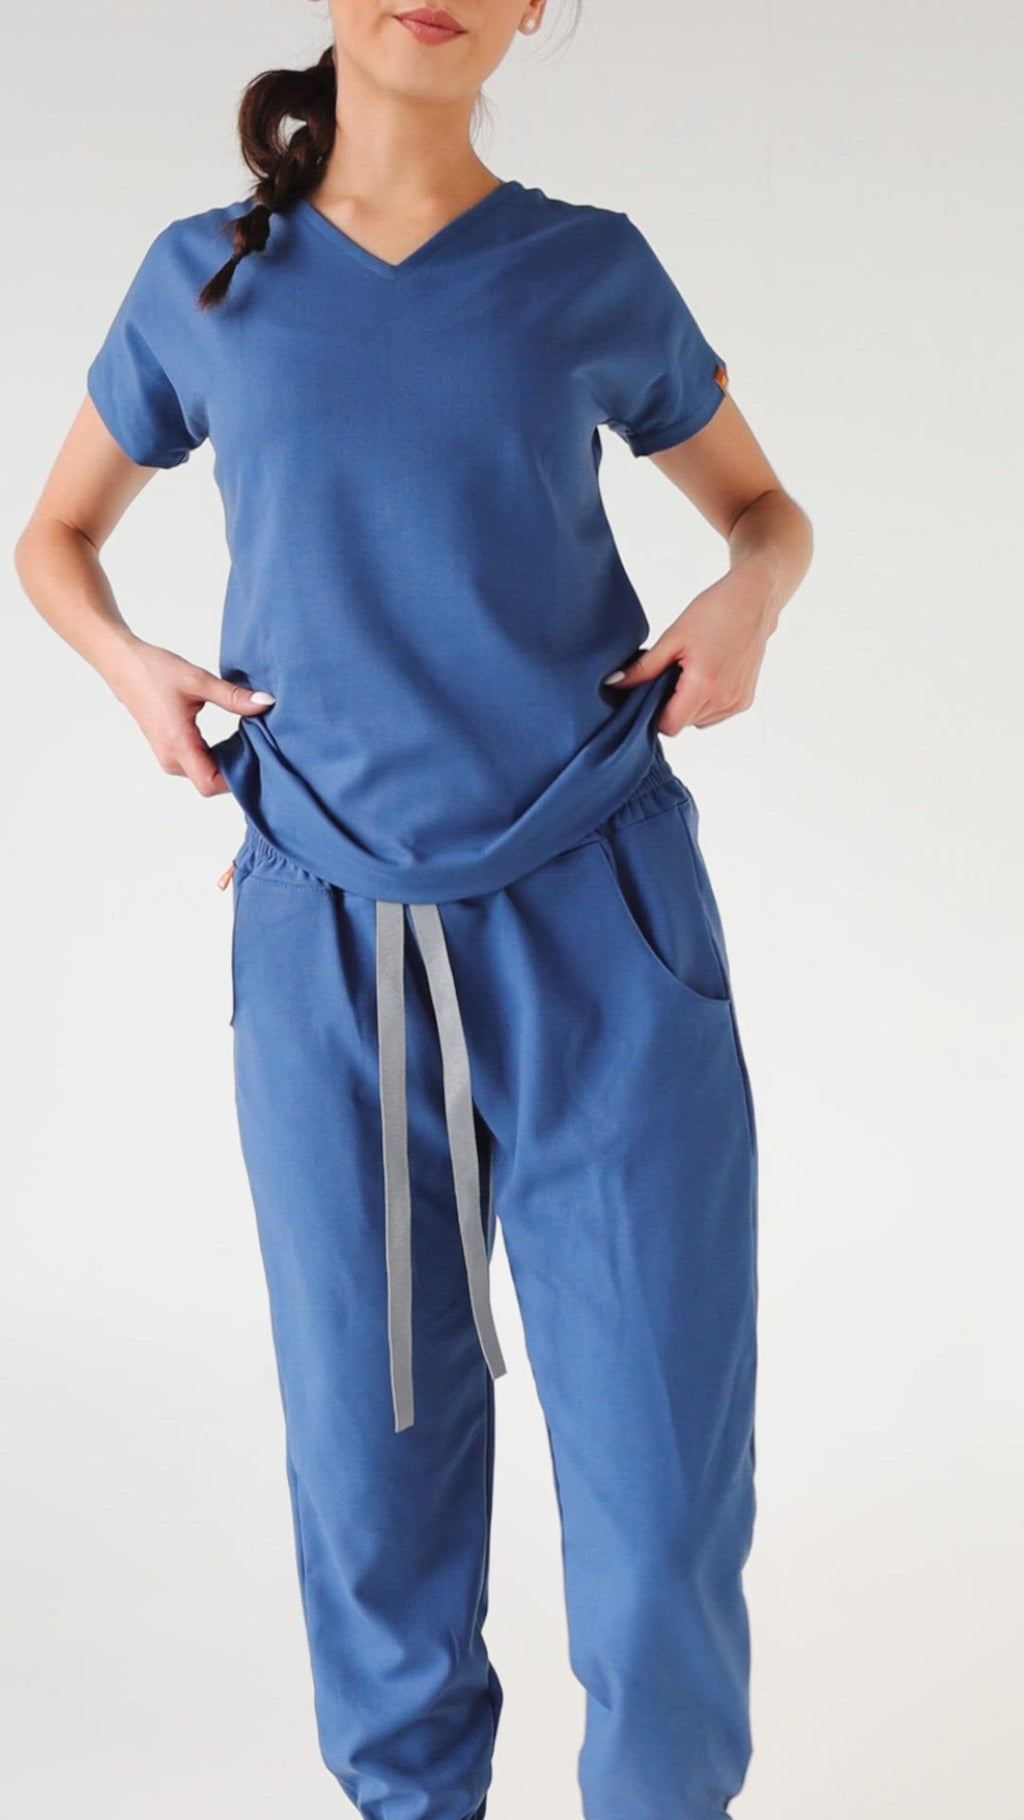 ropa primera capa color azul para mujer debajo de pijama quirurgica